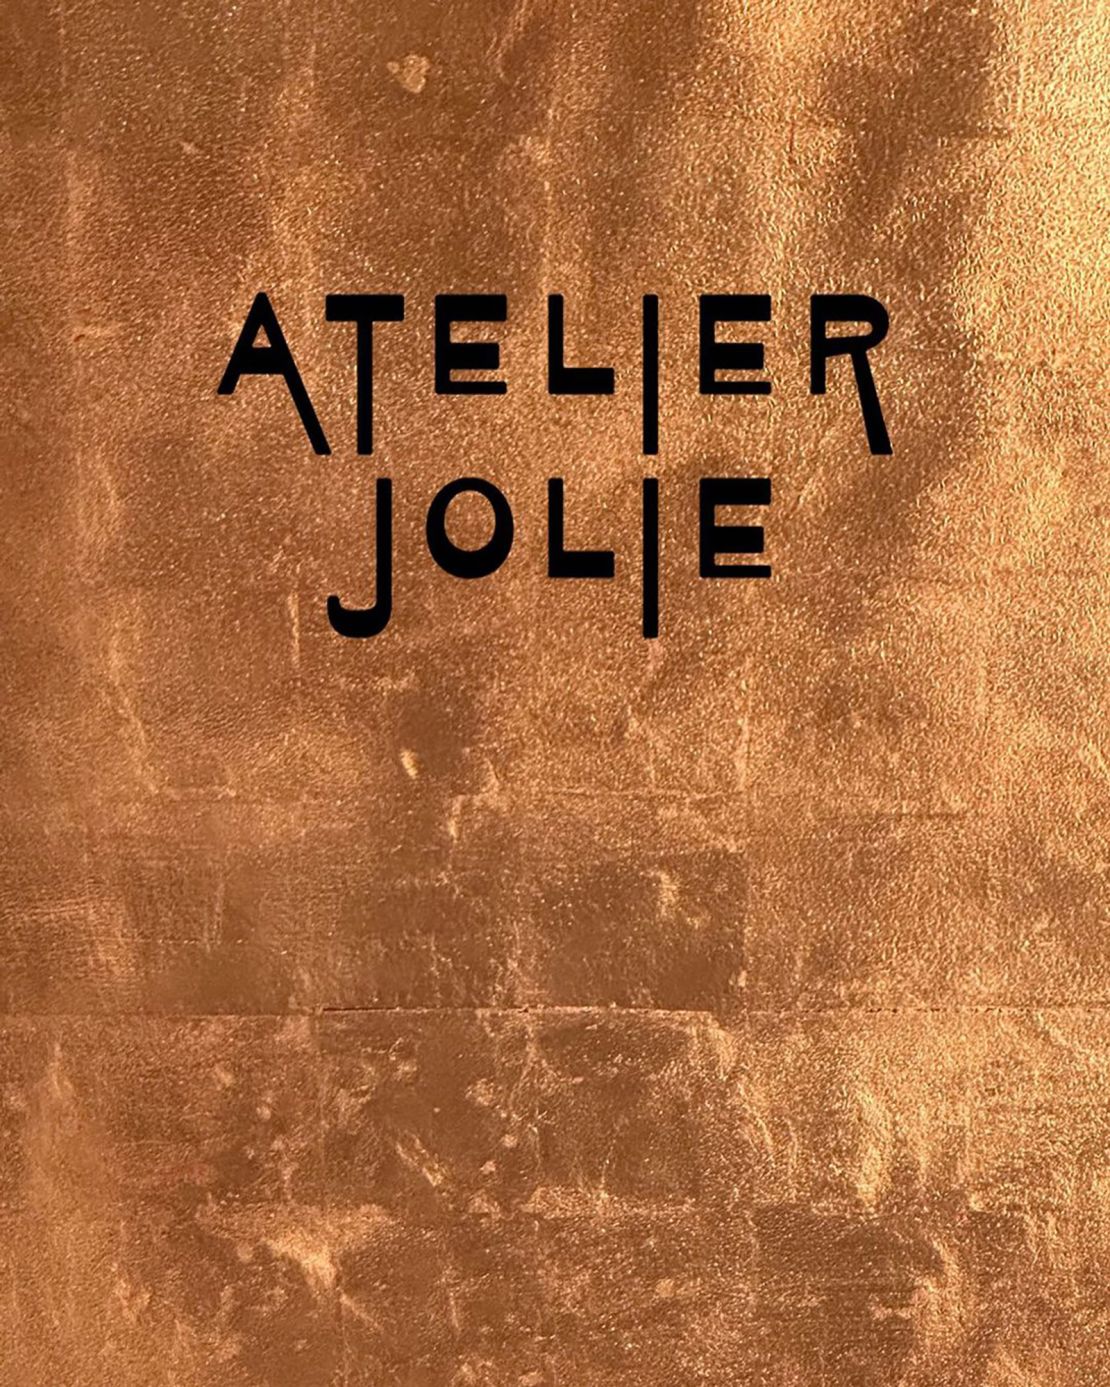 Jolie has named her brand Atelier Jolie.